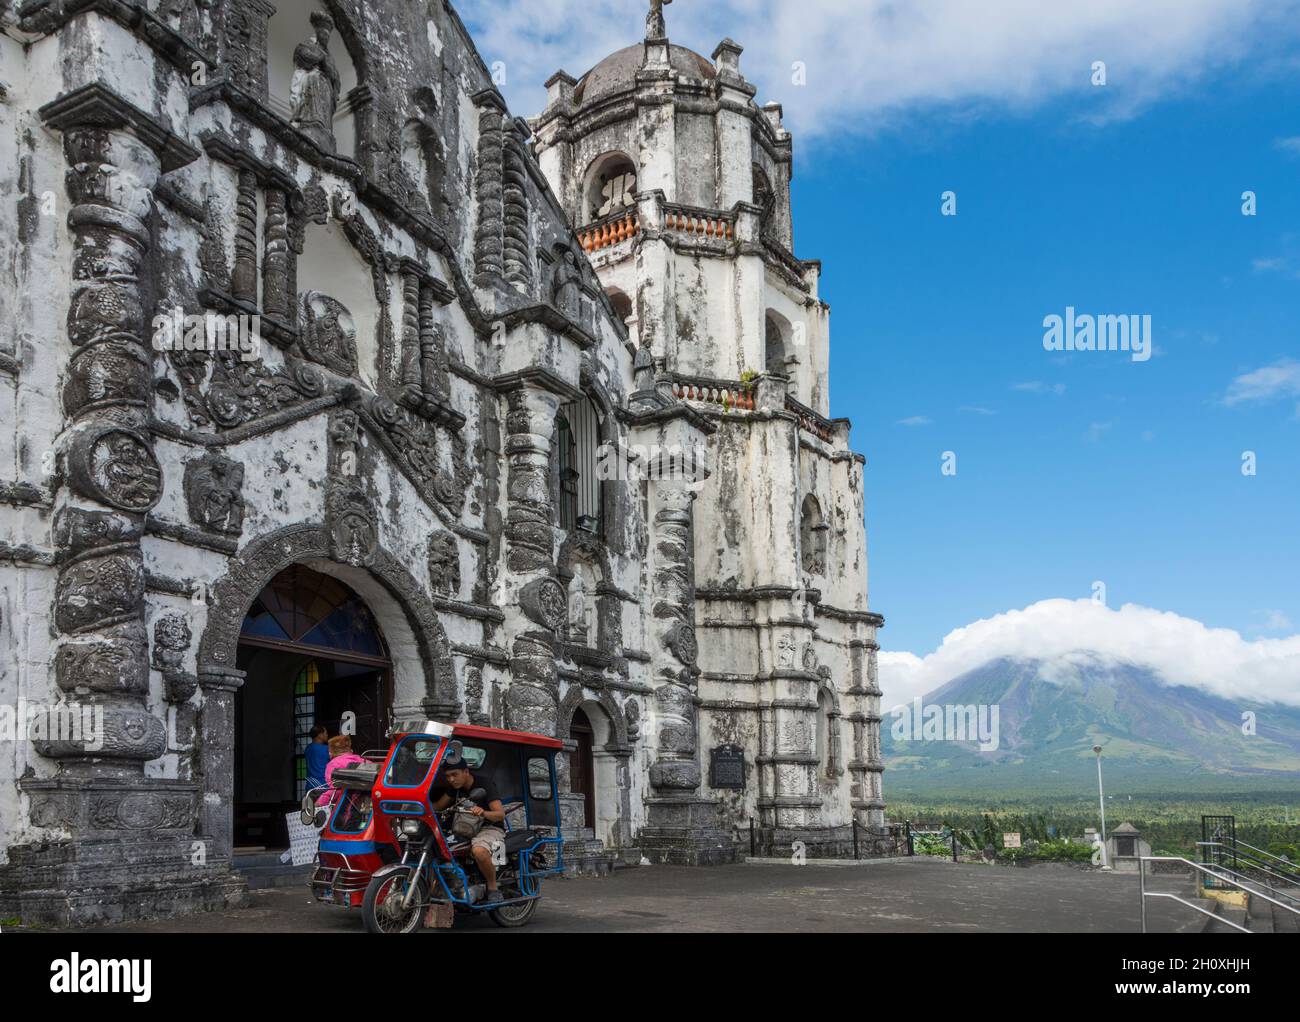 Taxi a motore di fronte alla chiesa di Daraga (Chiesa Parrocchiale di Nuestra Señora de la Porteria). Monte Mayon in background.Daraga, Albay, Filippine Foto Stock